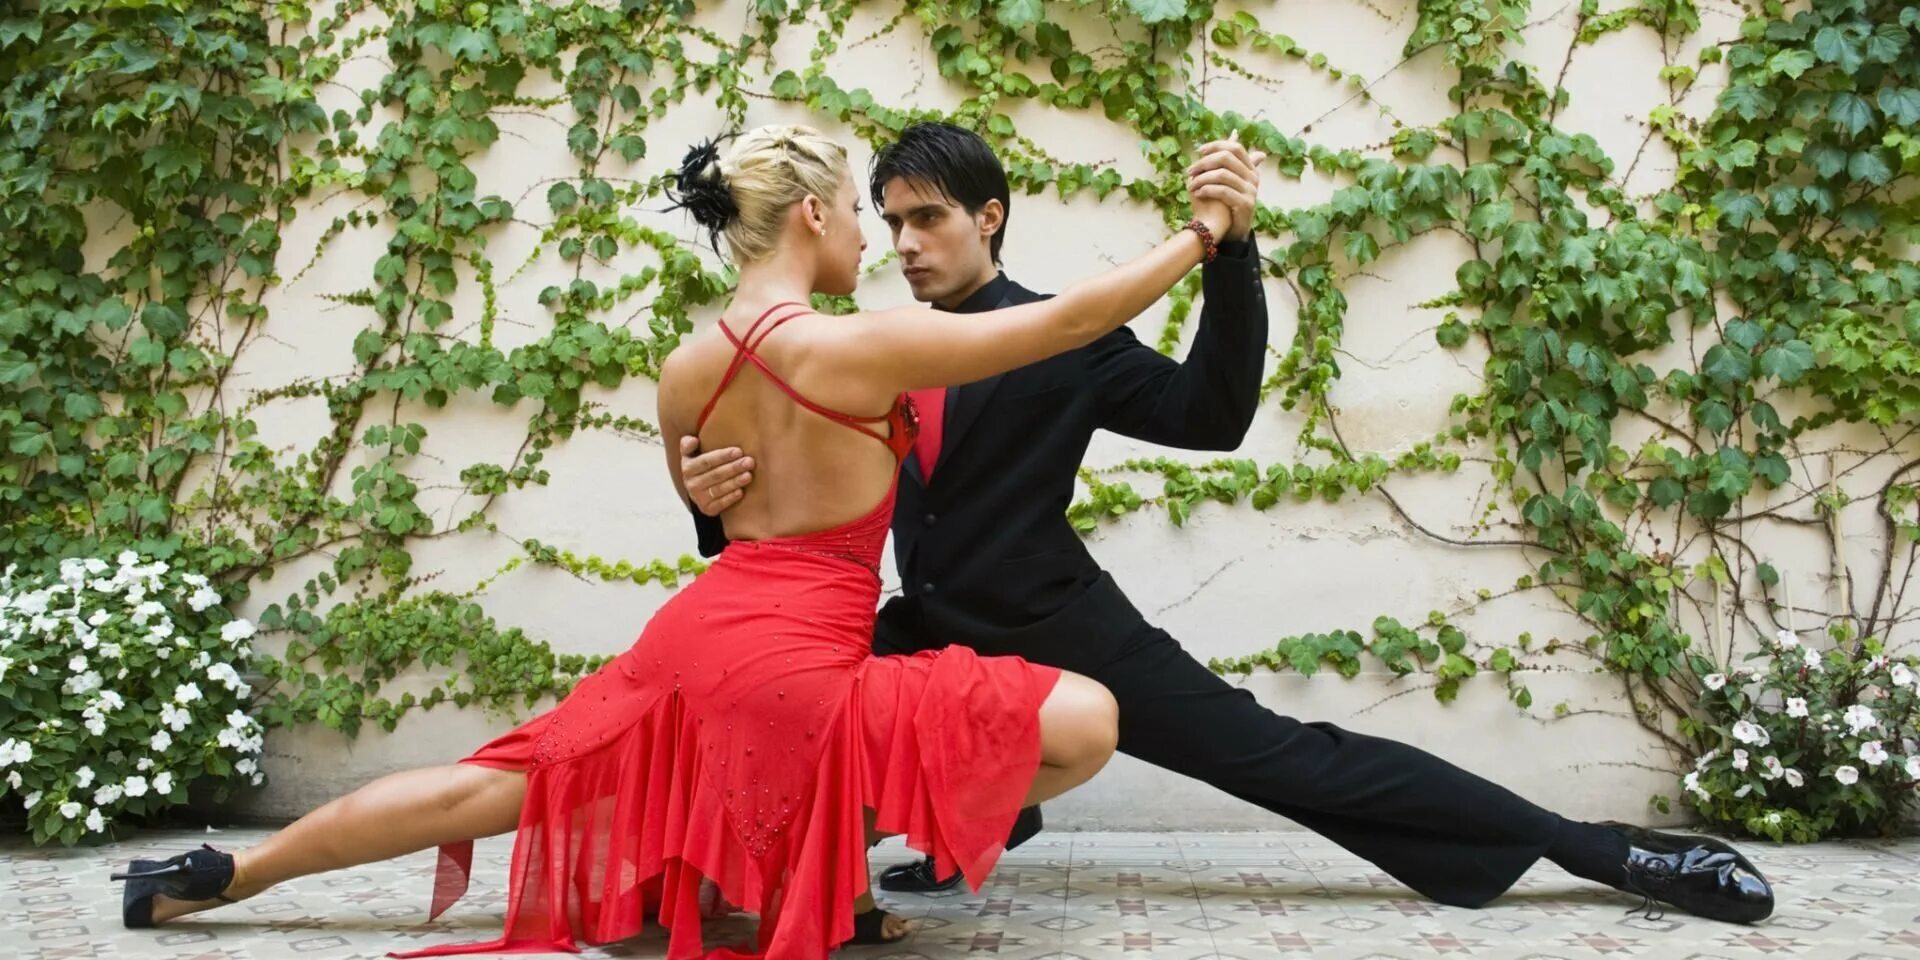 Аргентинское танго. Танец пары. Романтический танец. Танго танец. Парные танцы под музыку